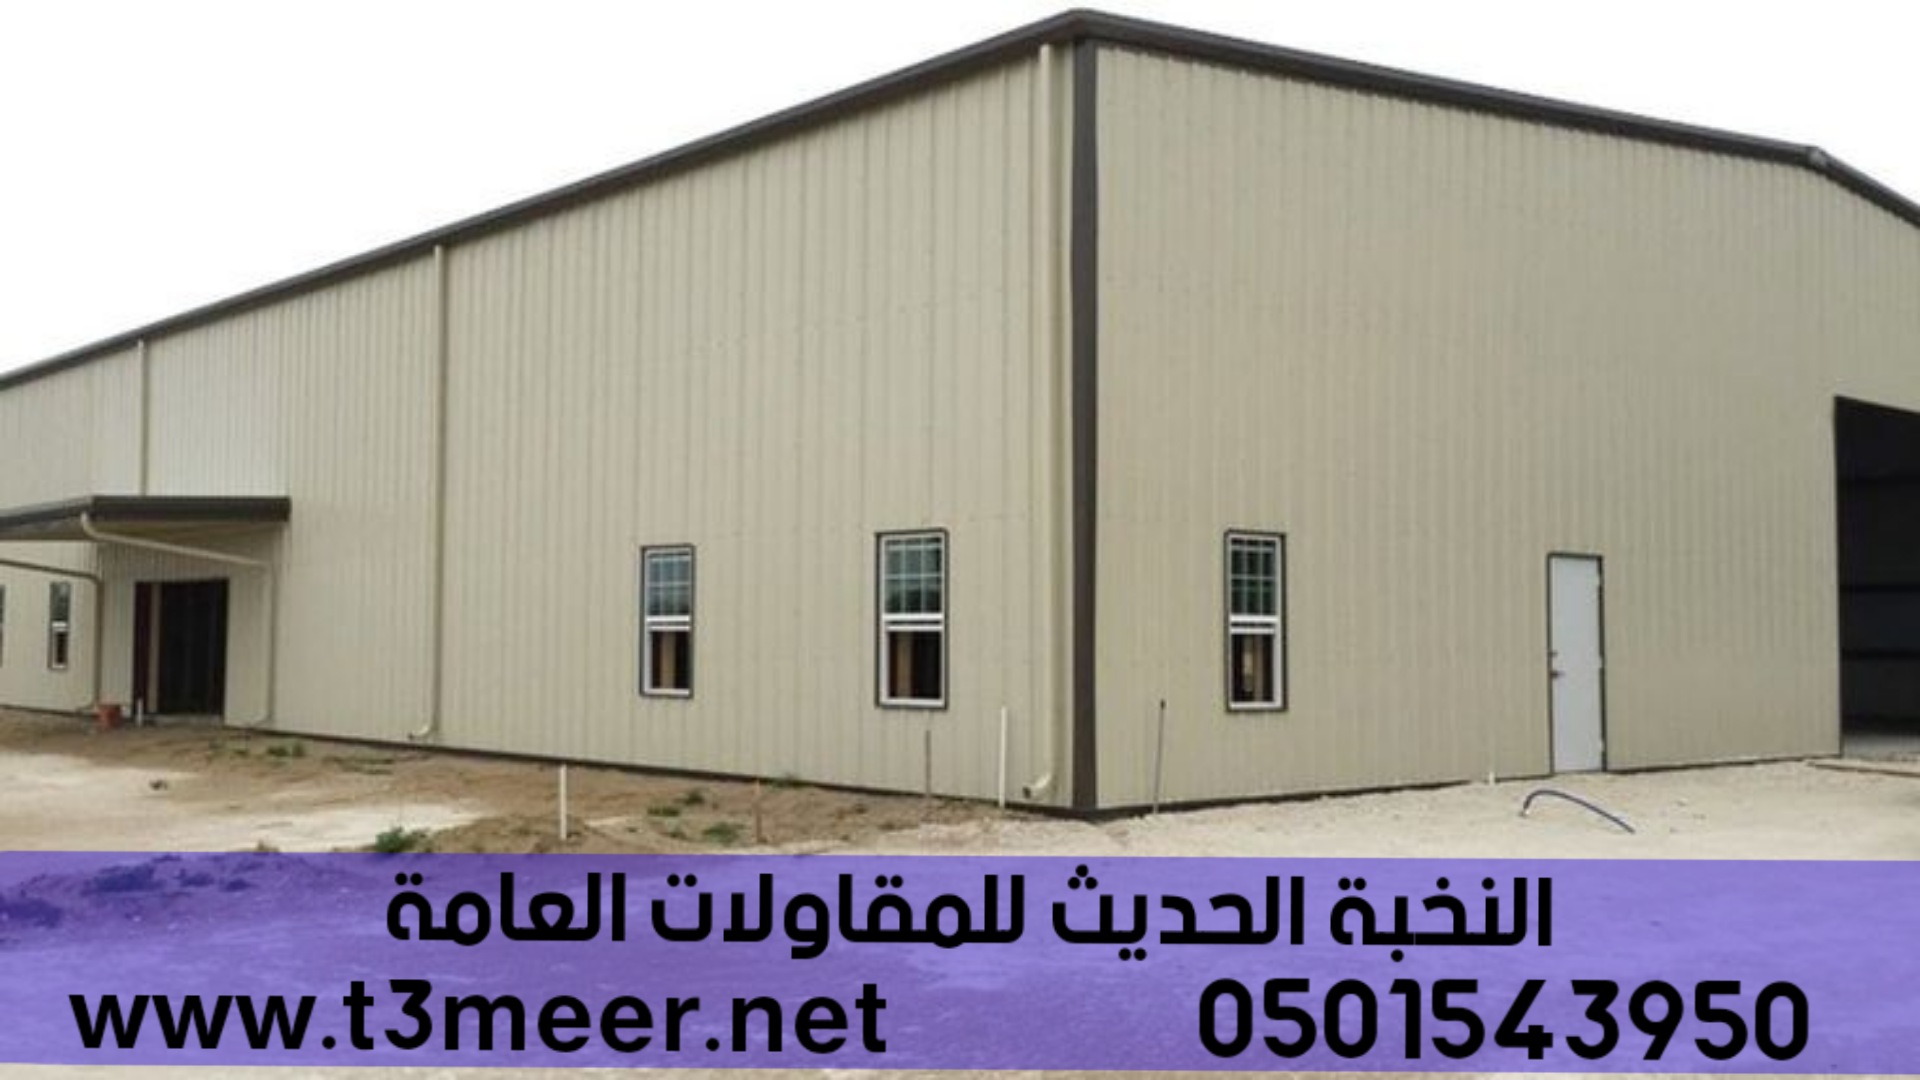 افضل شركة بناء هناجر في جدة , 0501543950 P_2276jp1n24